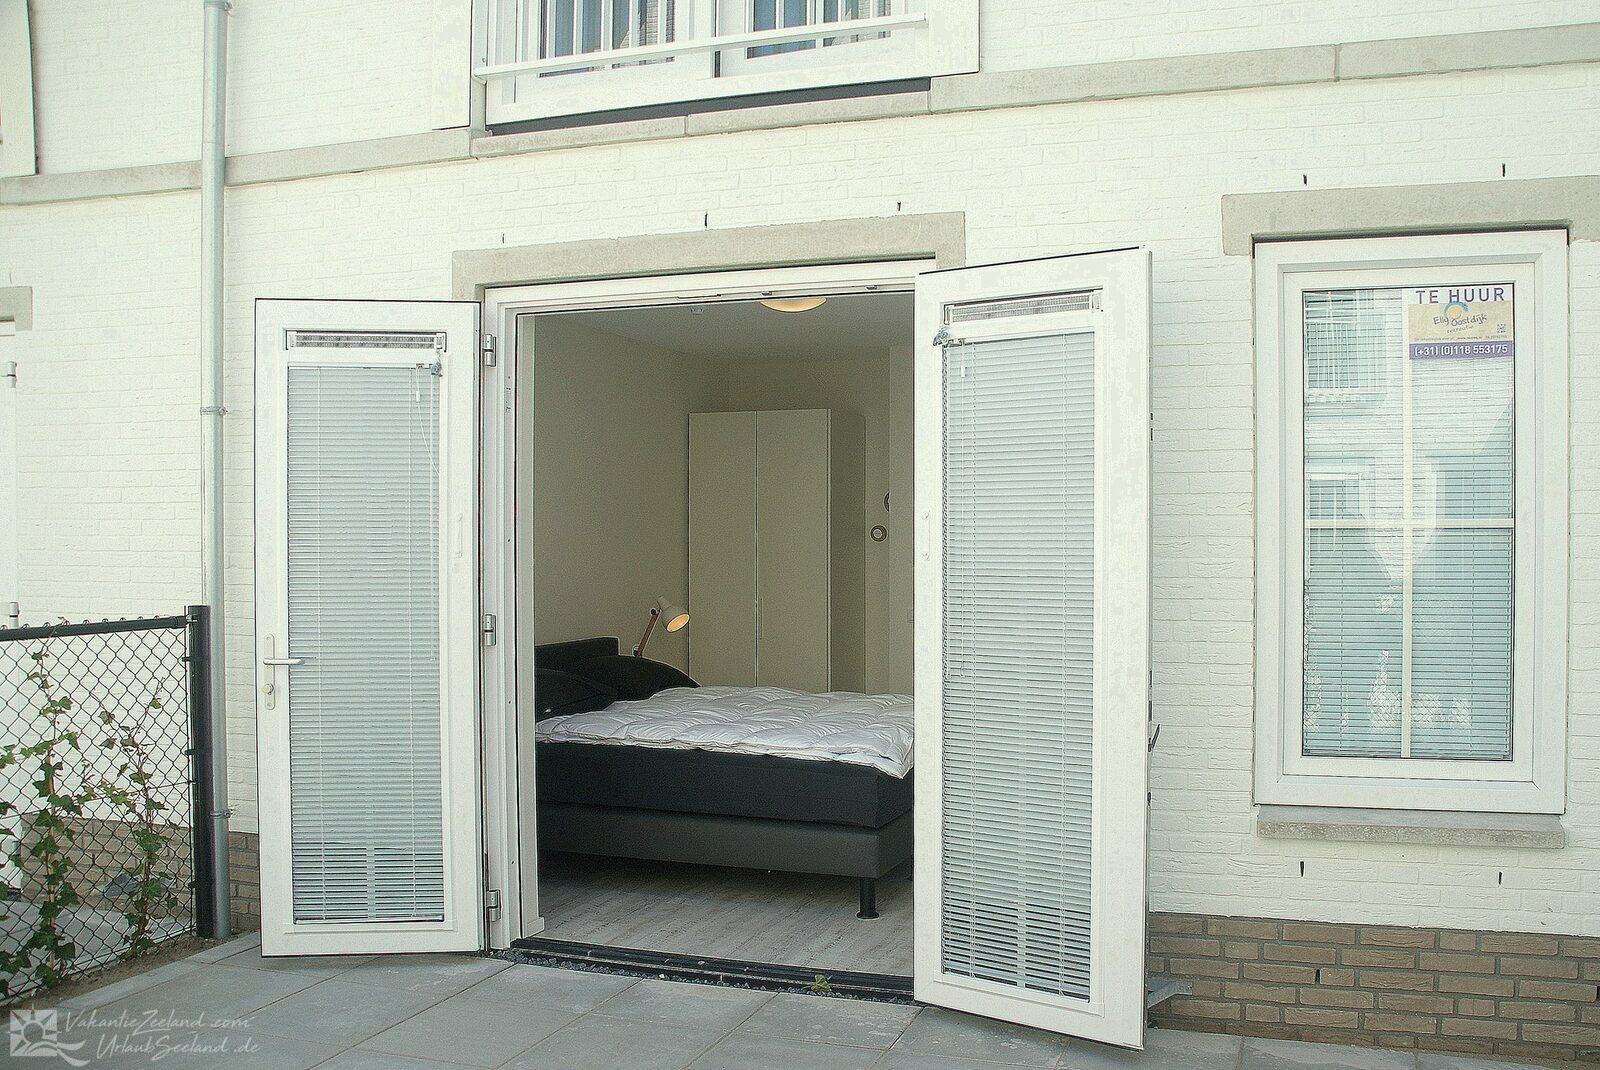 VZ904 Ferienappartement in Koudekerke Dishoek